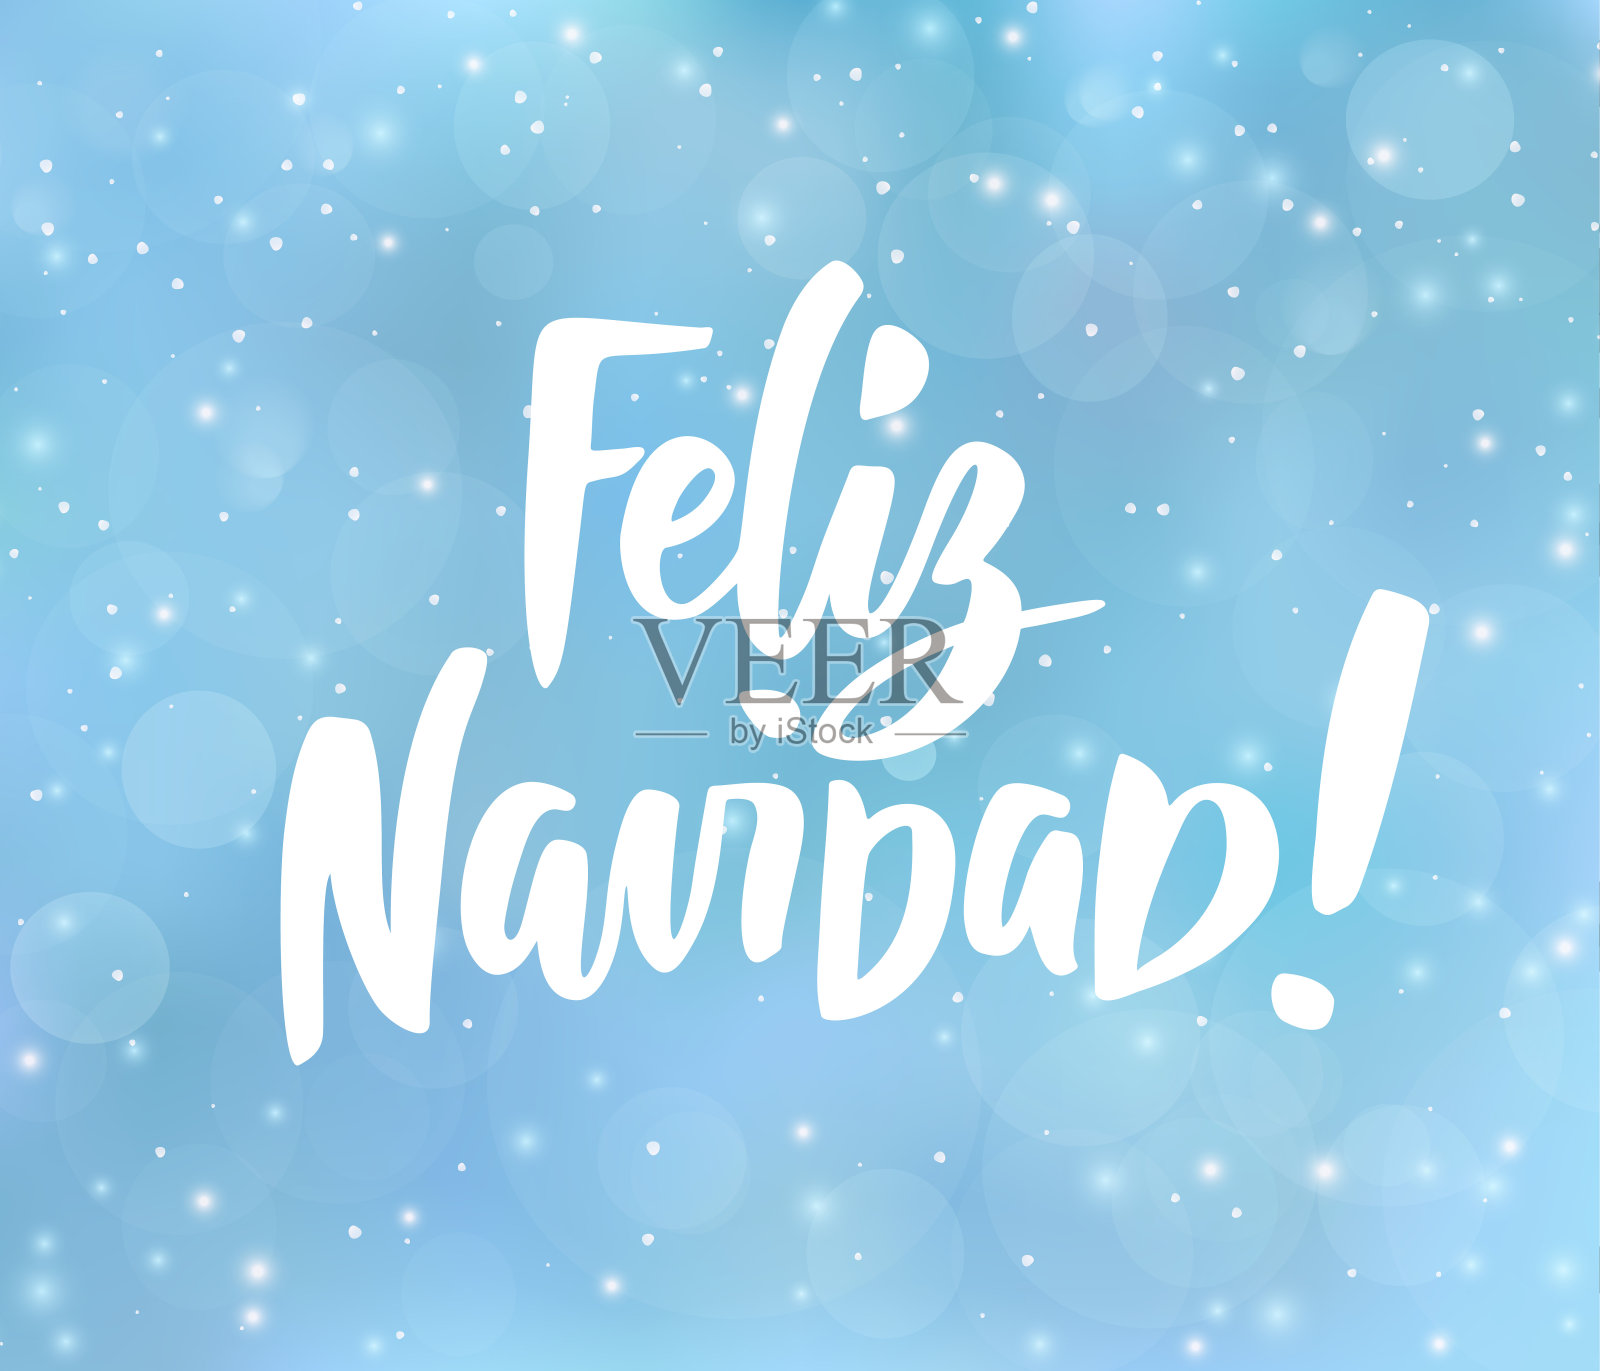 圣诞快乐-西班牙语。节日问候。蓝色模糊背景与雪花效果。设计模板素材